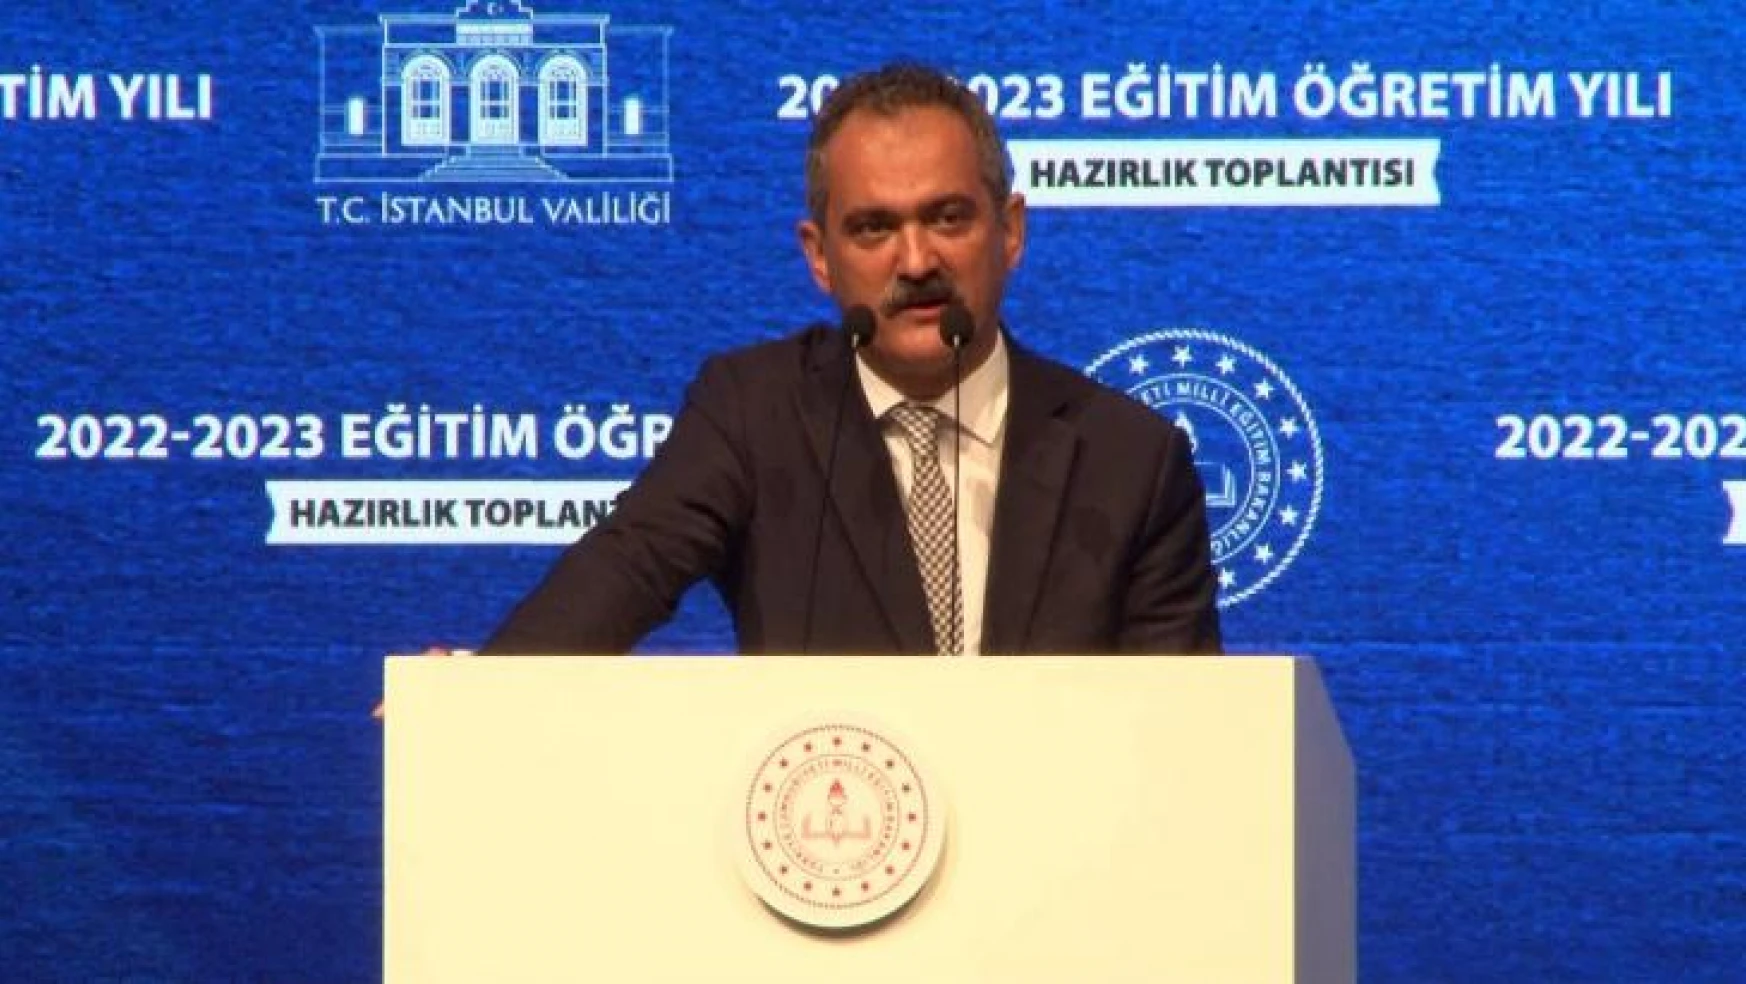 Milli Eğitim Bakanı Özer: 'Okullarımızın ihtiyaçları için genel müdürlüklere 1 milyar TL aktardık'